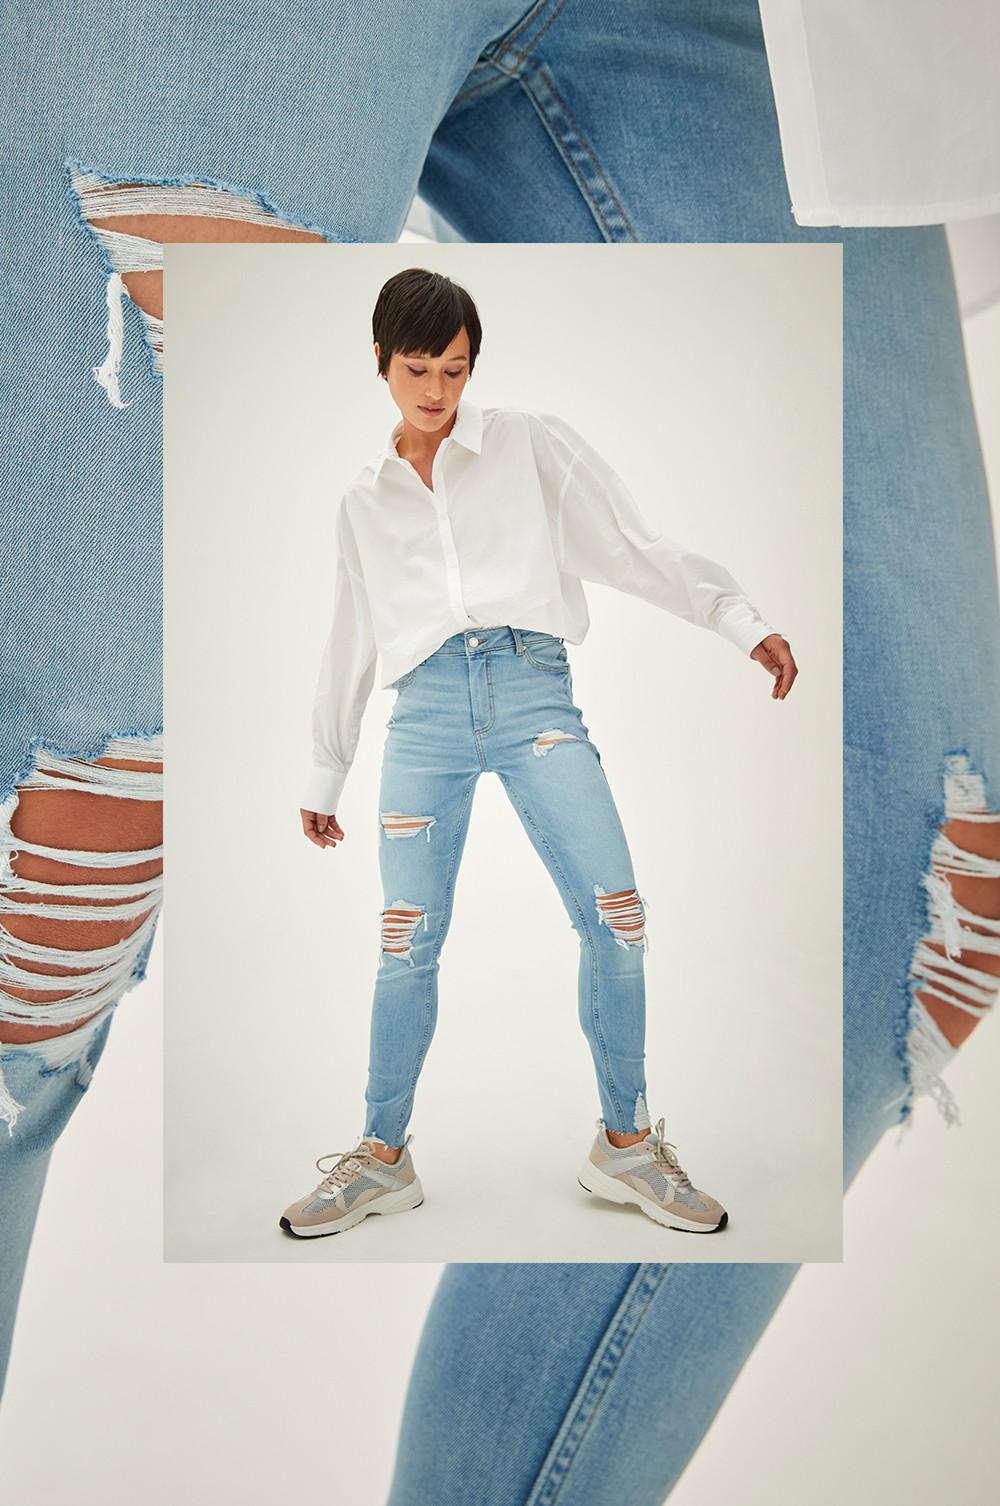 Model wears ripped skinny jeans